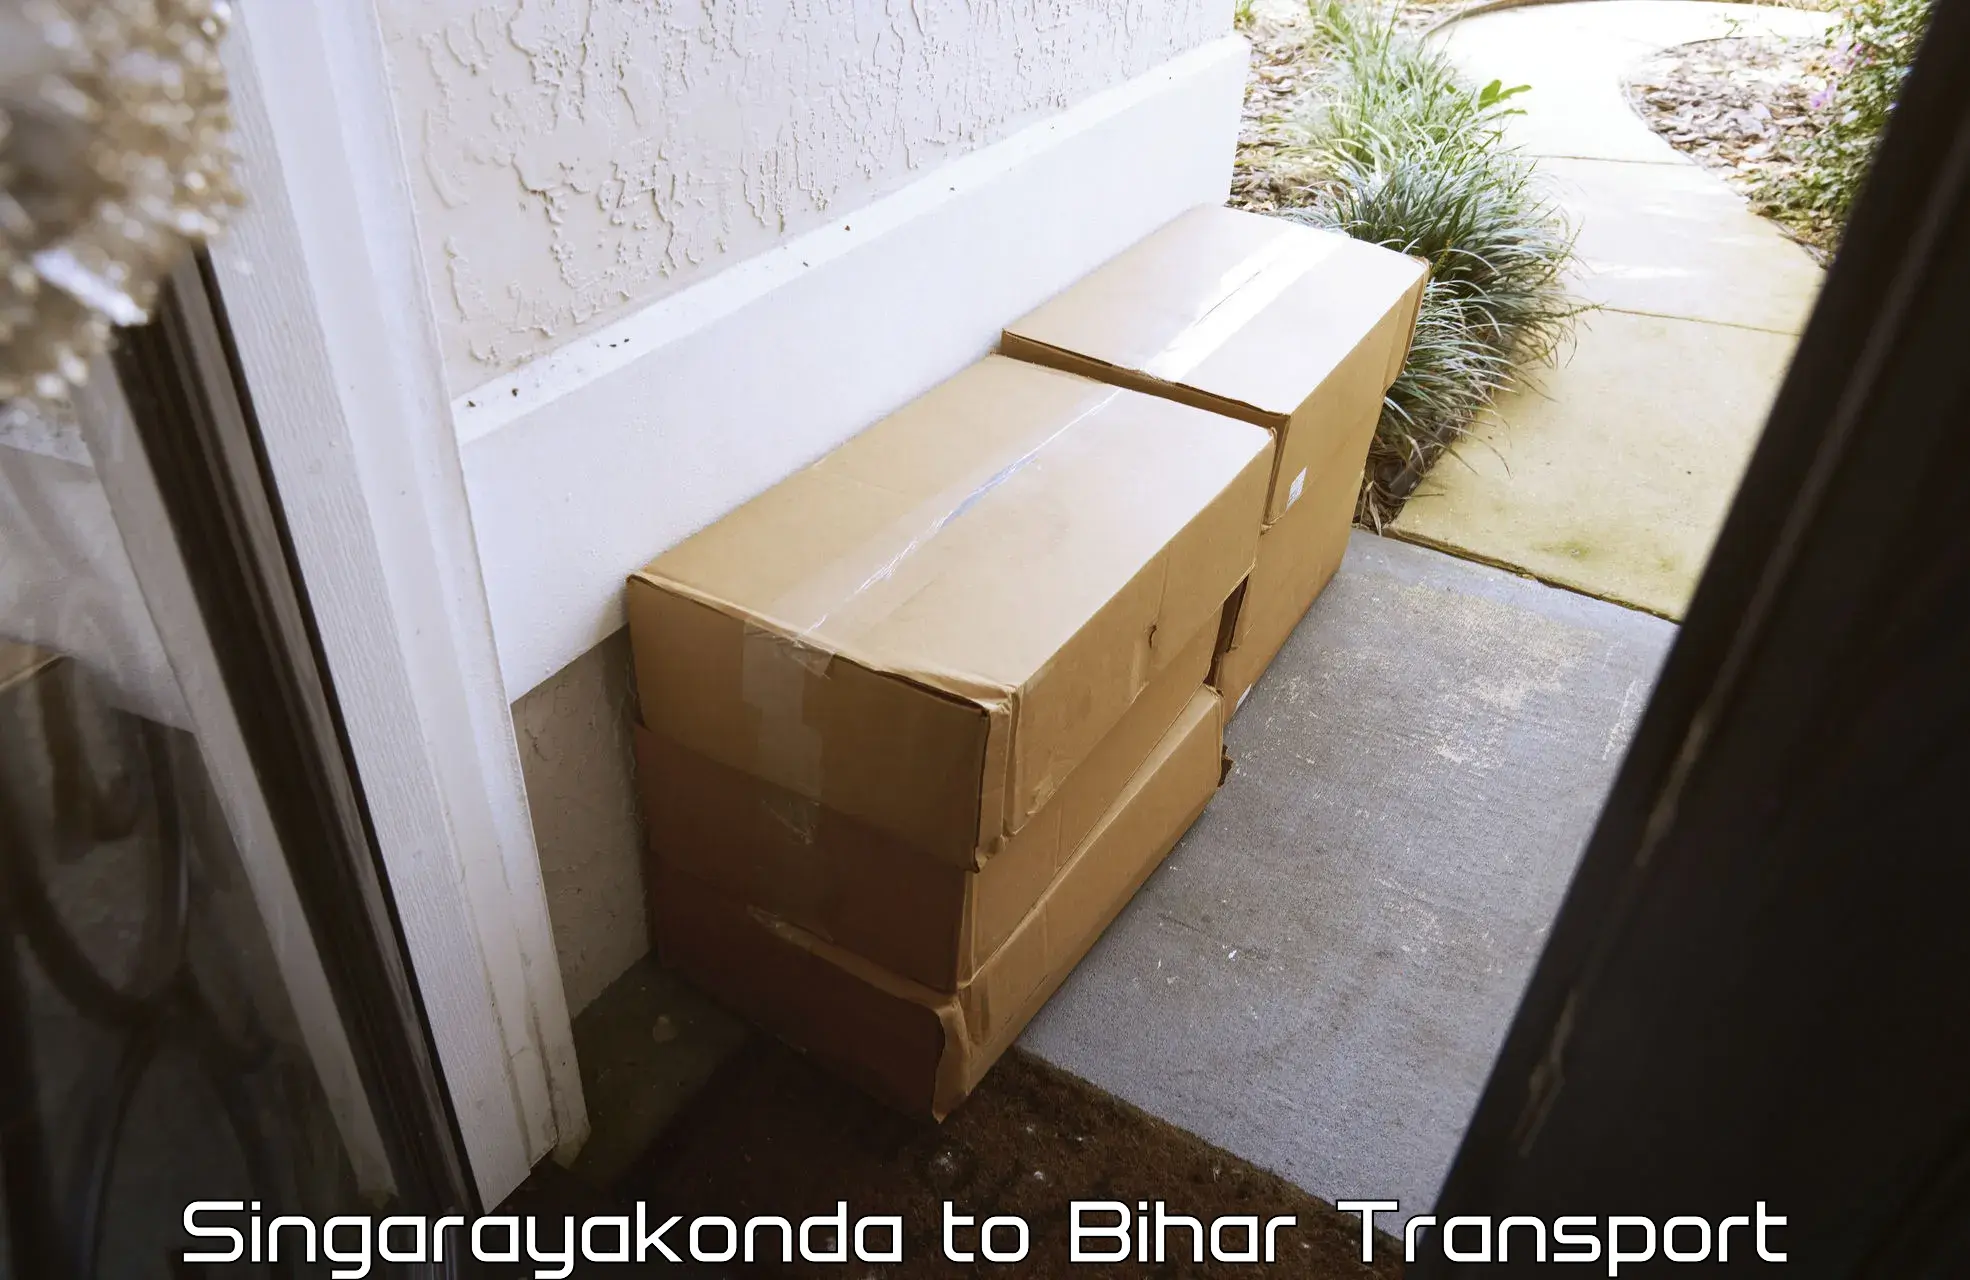 Air cargo transport services Singarayakonda to Buxar